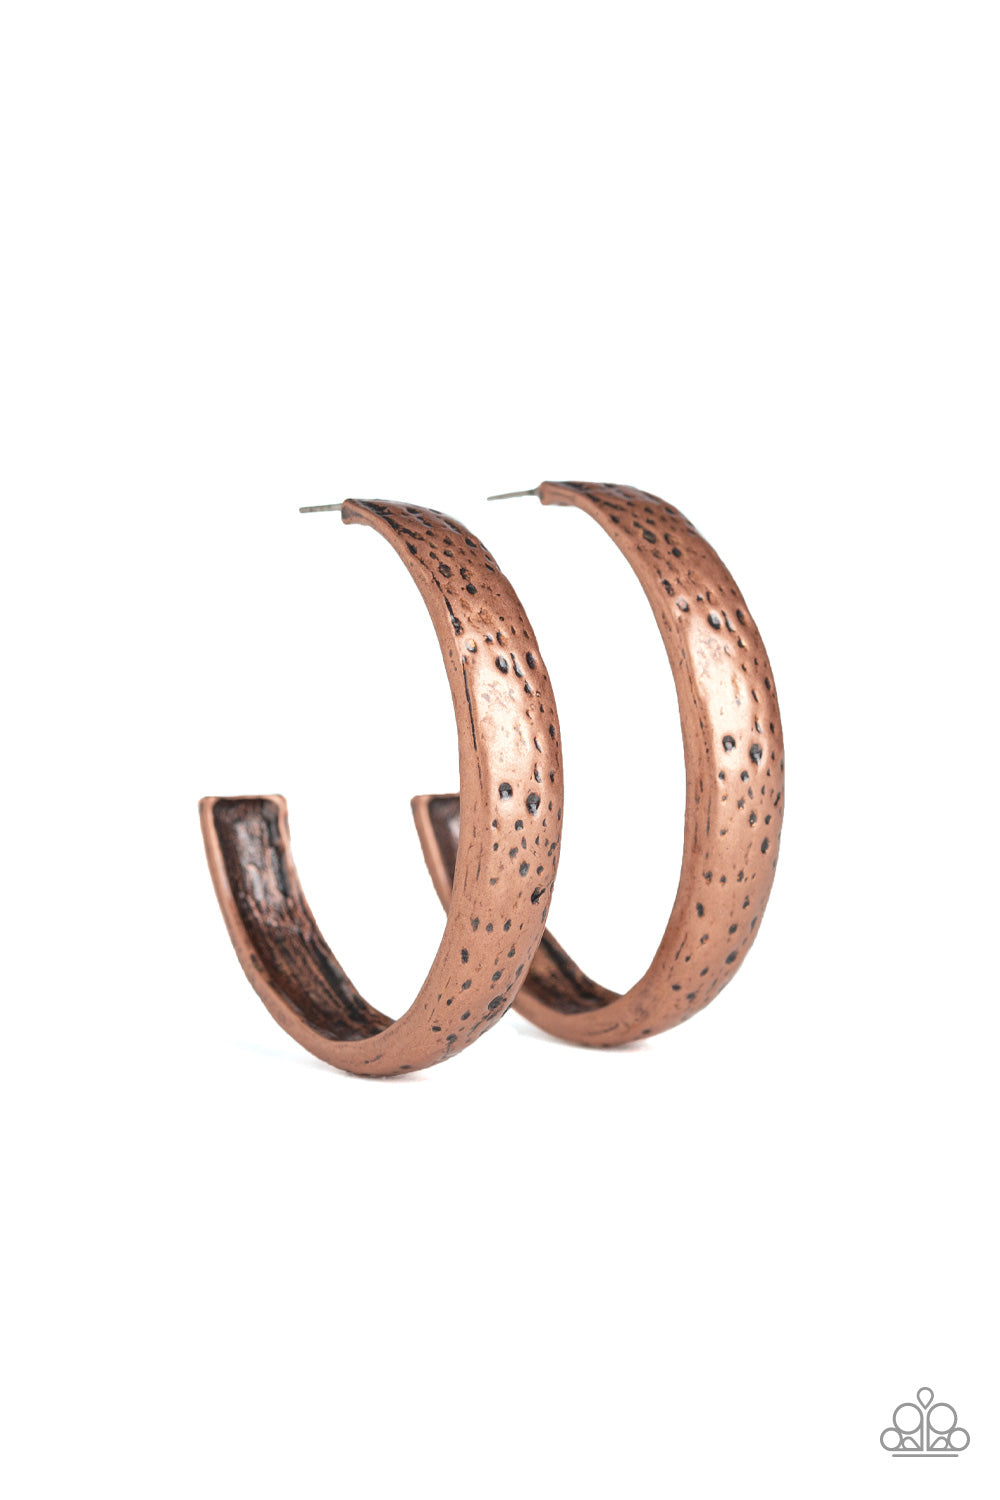 Rustic Revolution - Copper - VJ Bedazzled Jewelry